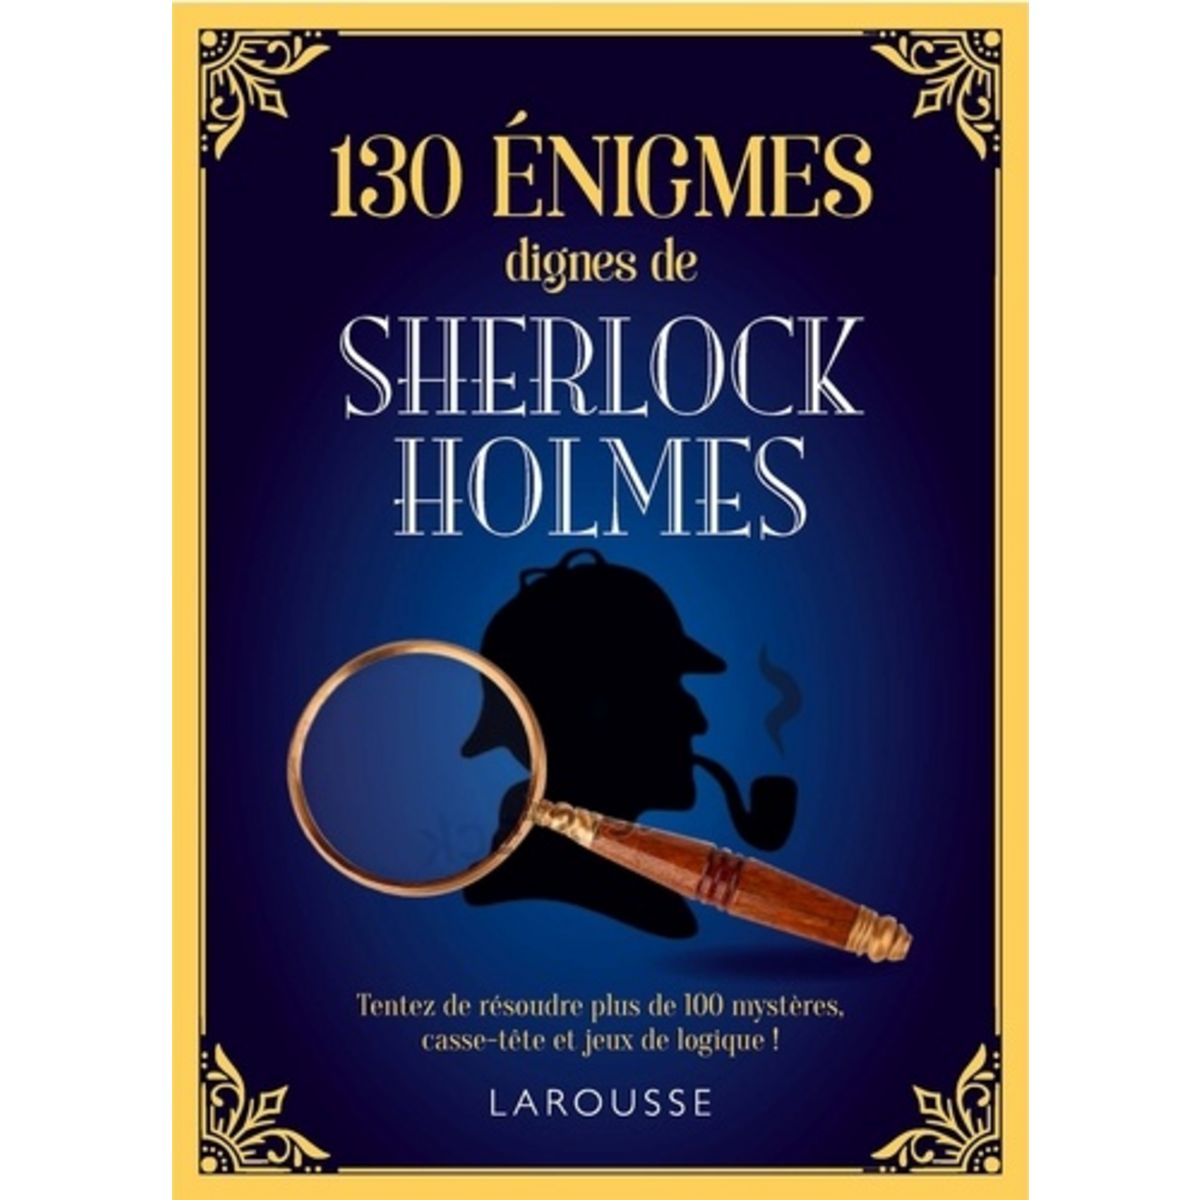  130 énigmes dignes de Sherlock Holmes, Moore Gareth